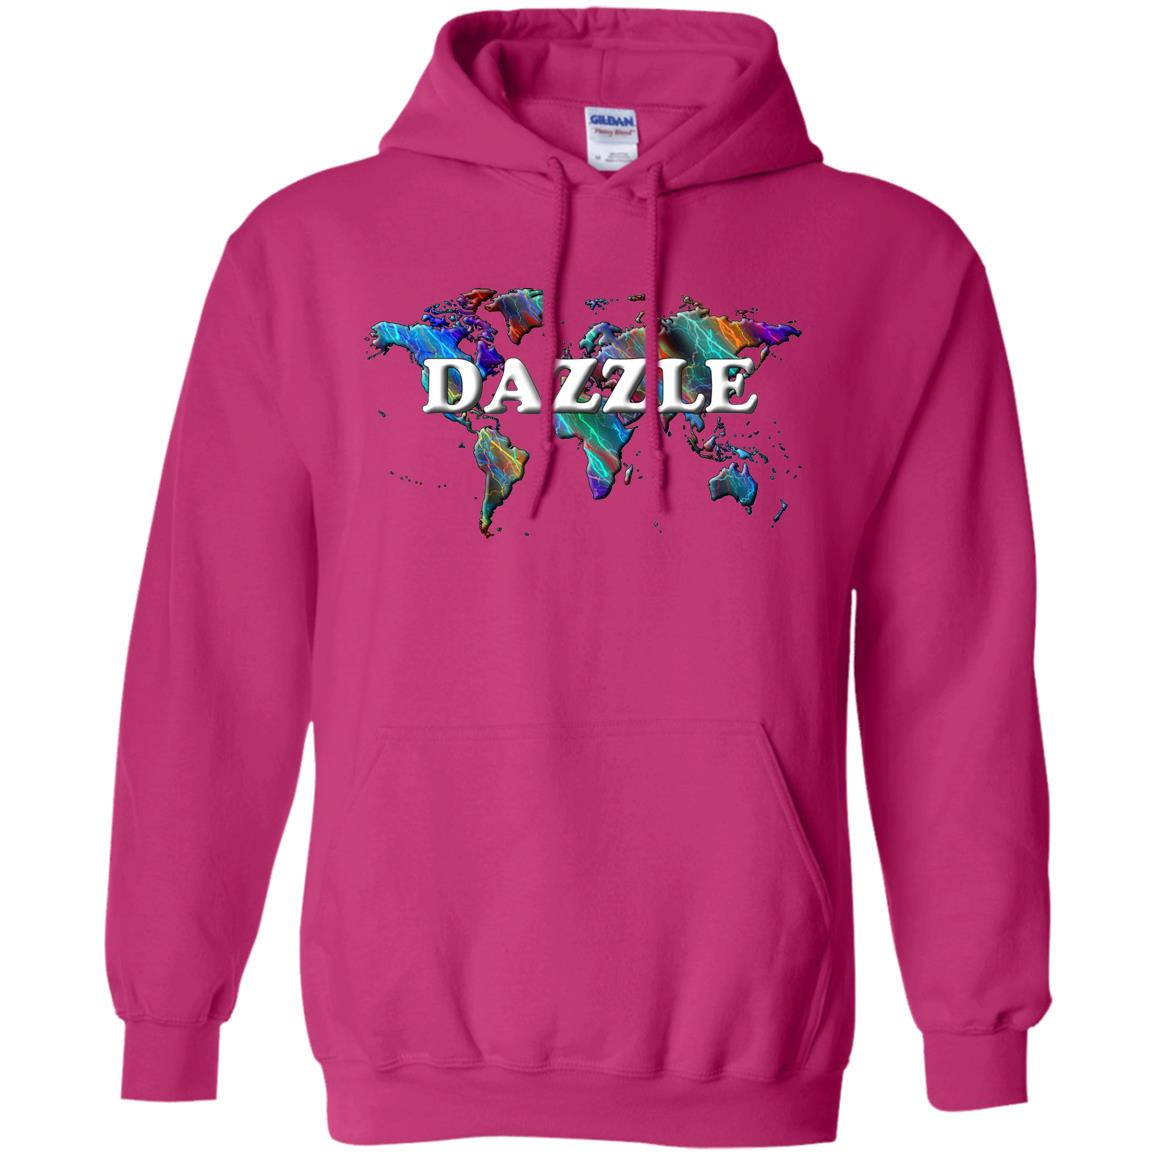 Dazzle Statement Hoodie